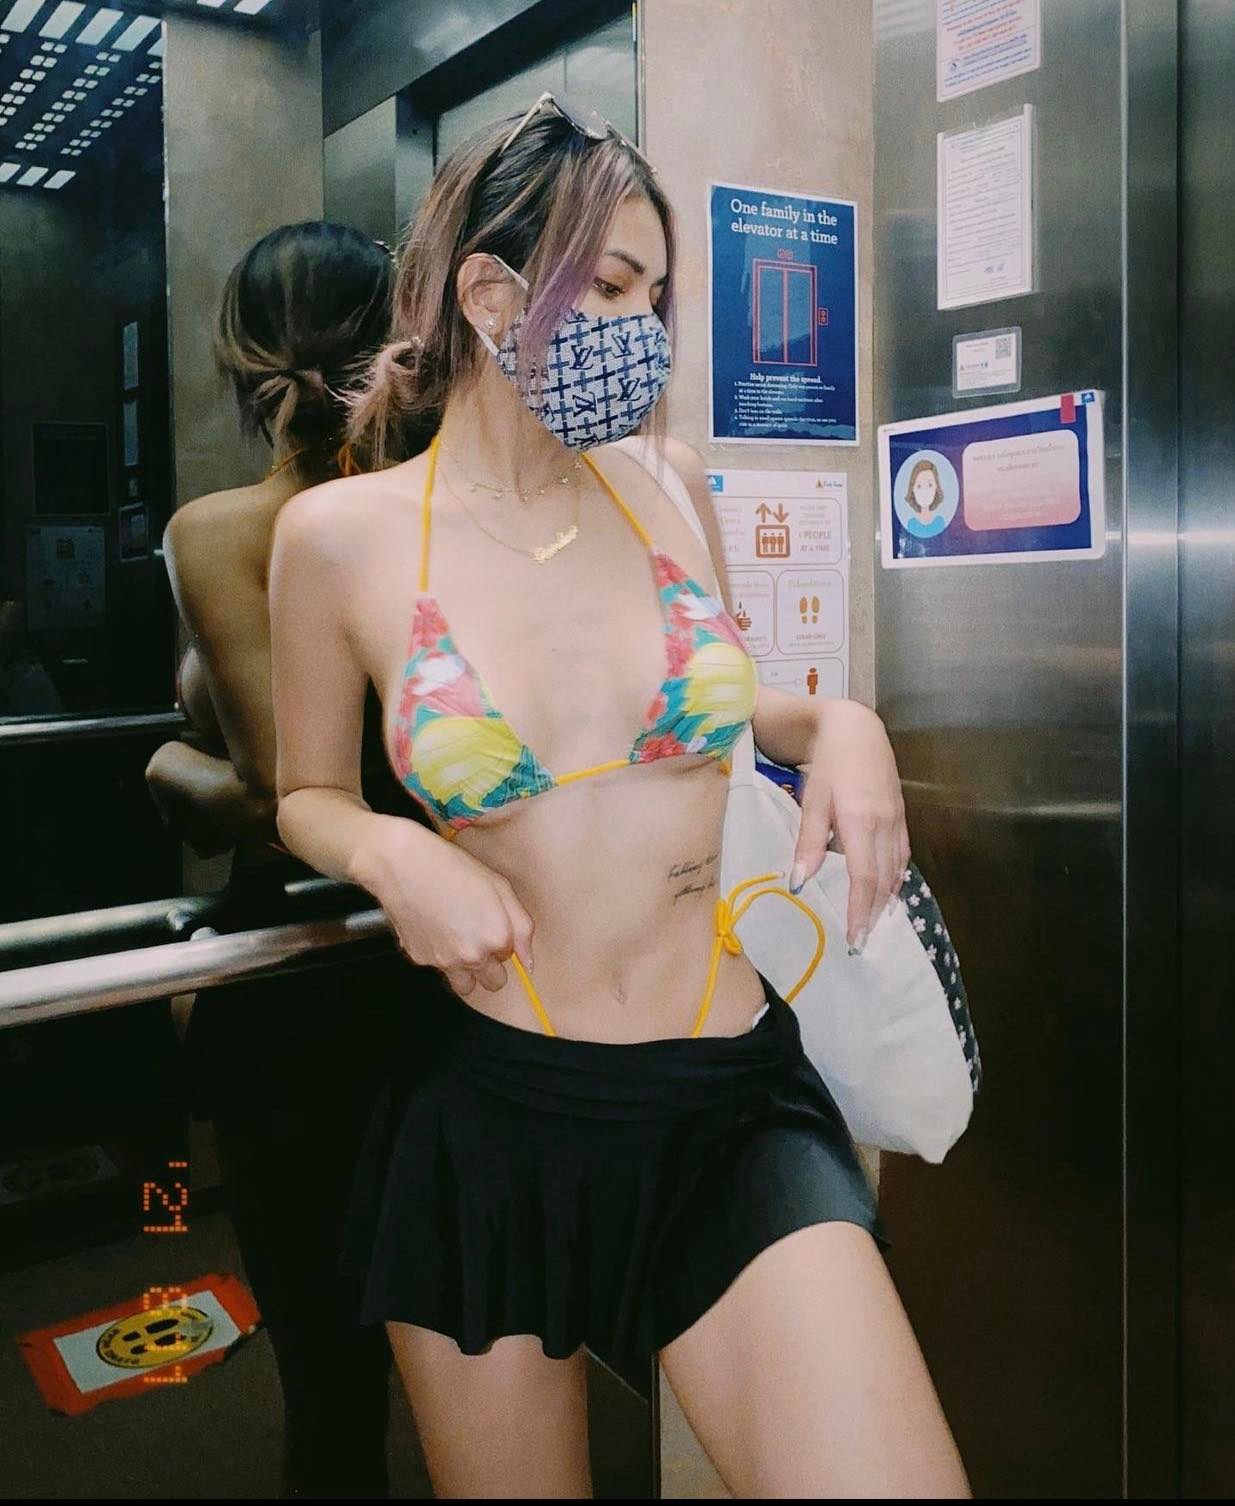 Nữ du học sinh gây chú ý khi chuyên mặc bikini trong thang máy - 3